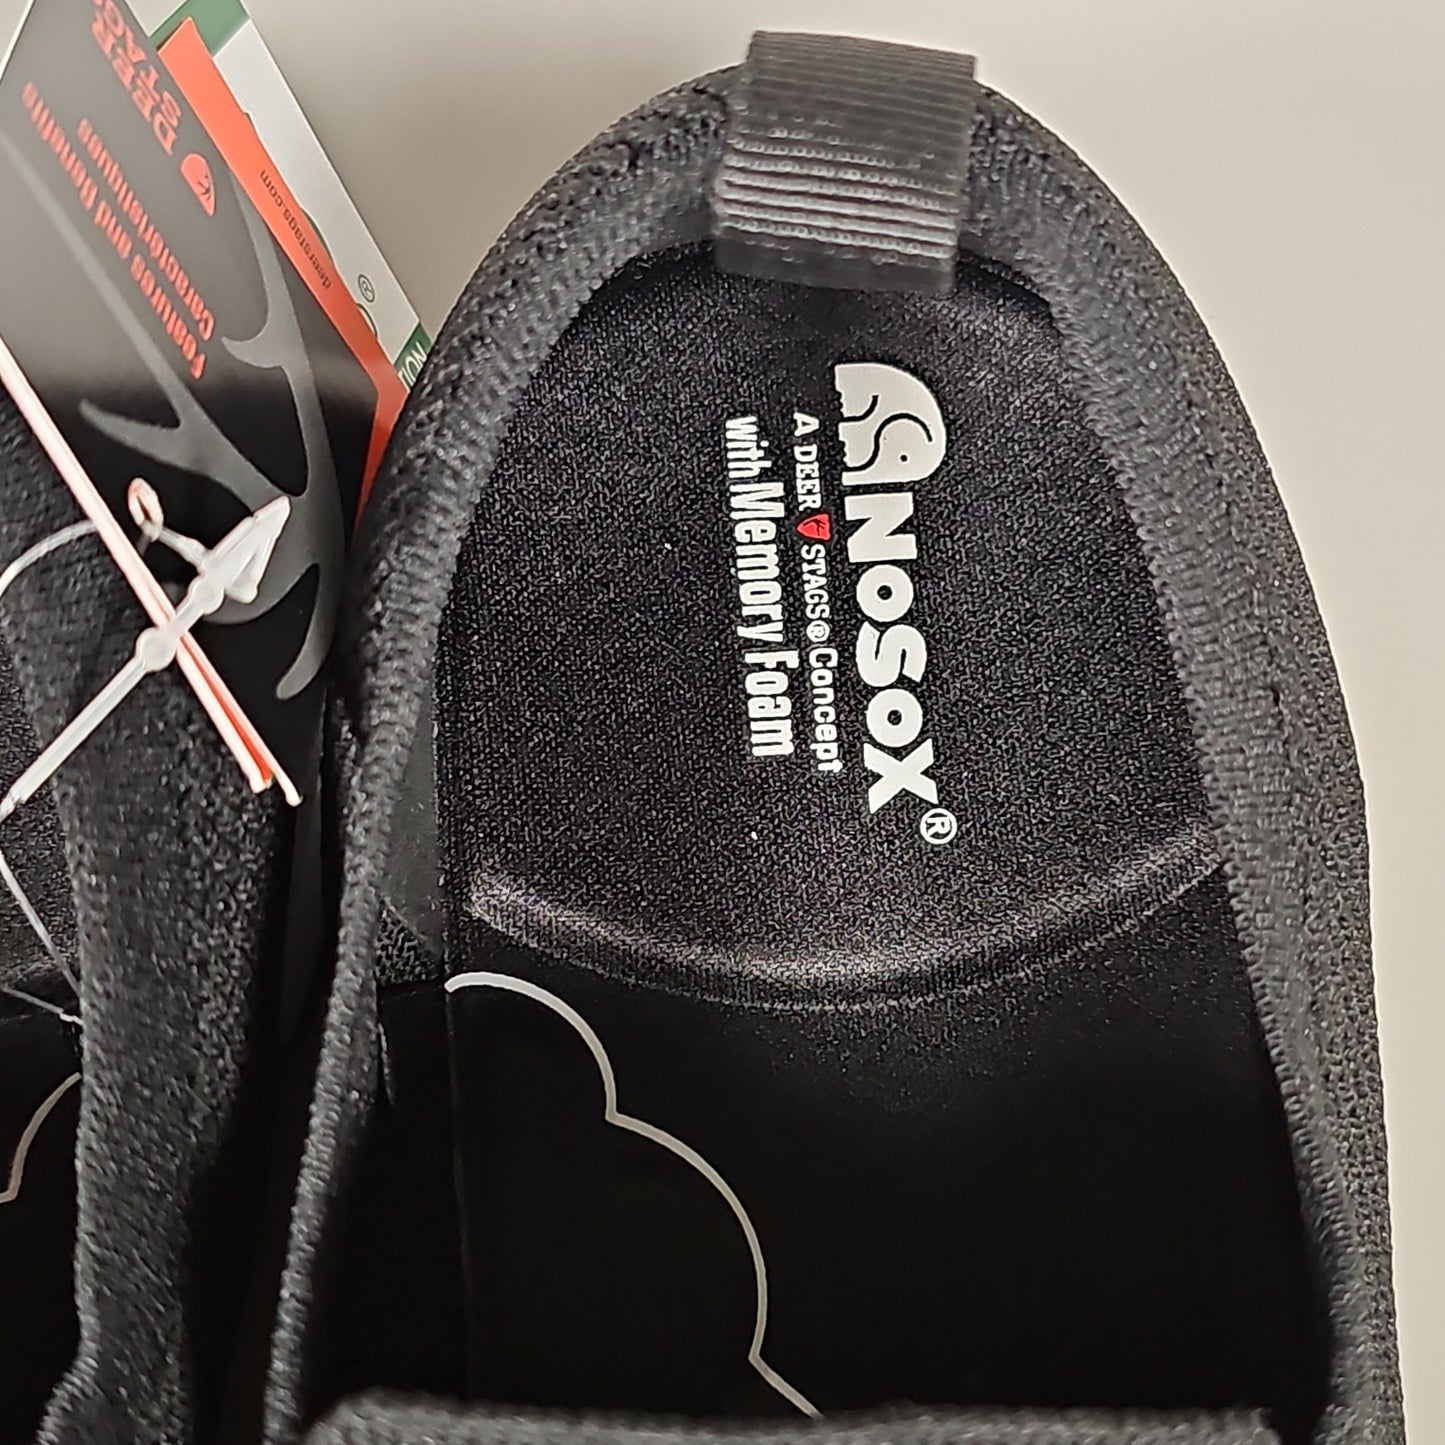 DEER STAGS Eddy Men's Slip-On Shoe Sneaker Sz 13 Black (New)